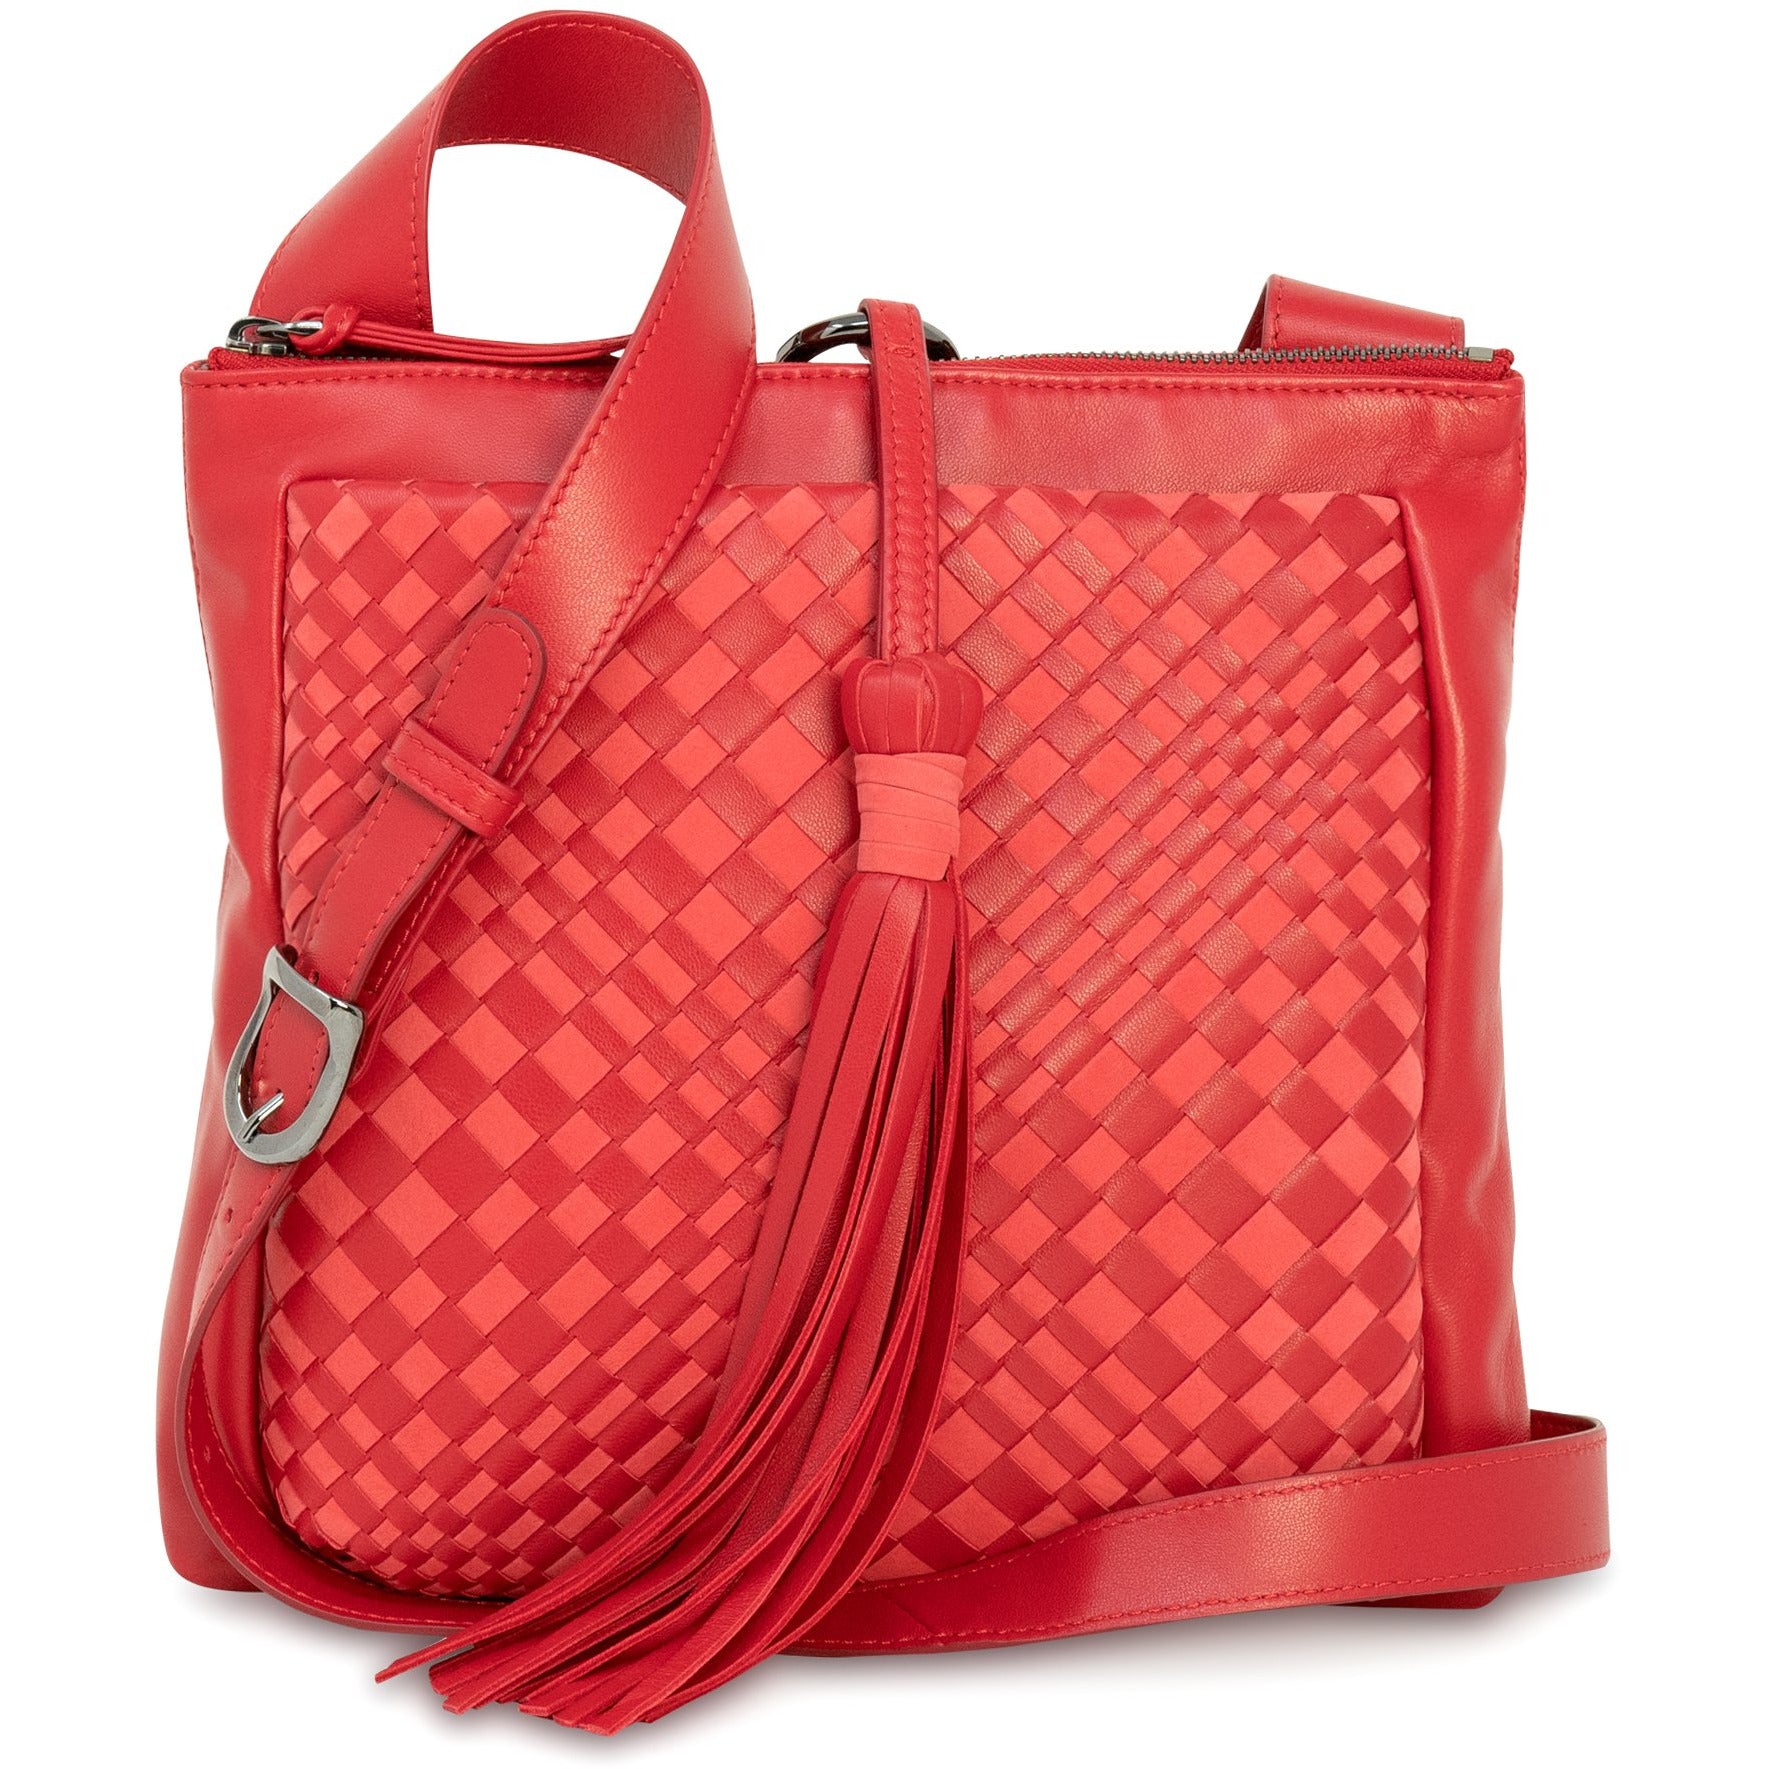 JENNY Crossbody Bag Handbag Shoulder Bag Leather Bag Leather 